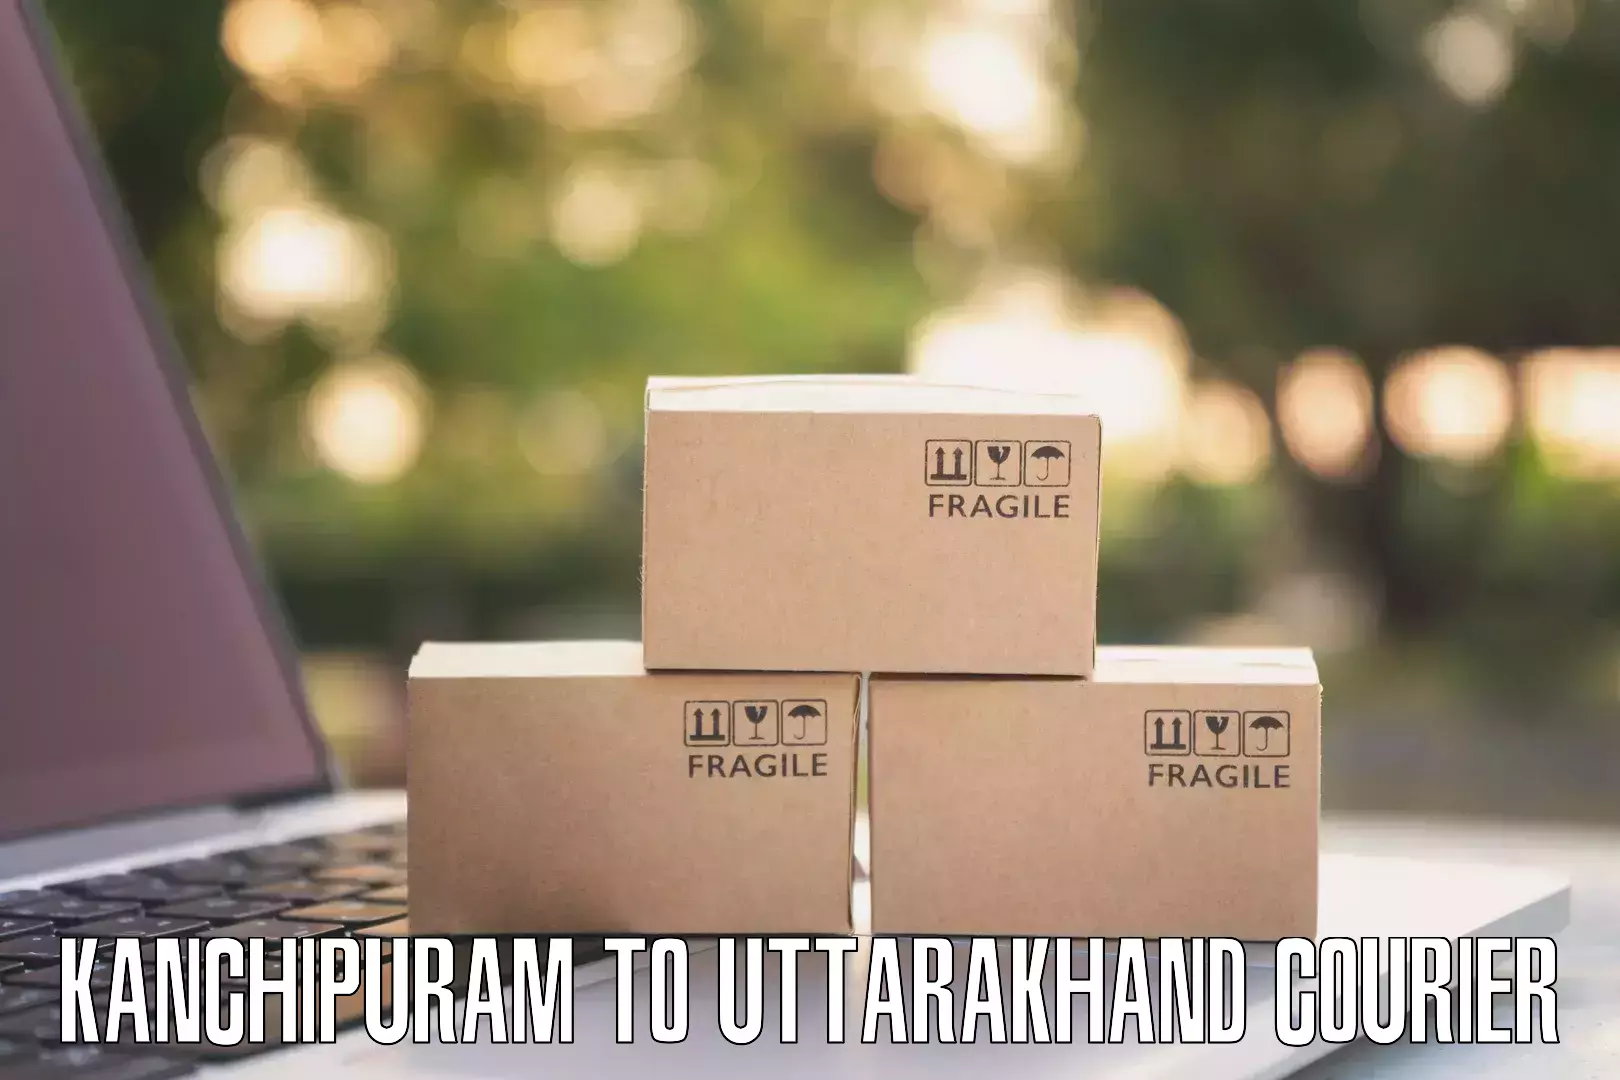 Personalized courier experiences Kanchipuram to Uttarakhand